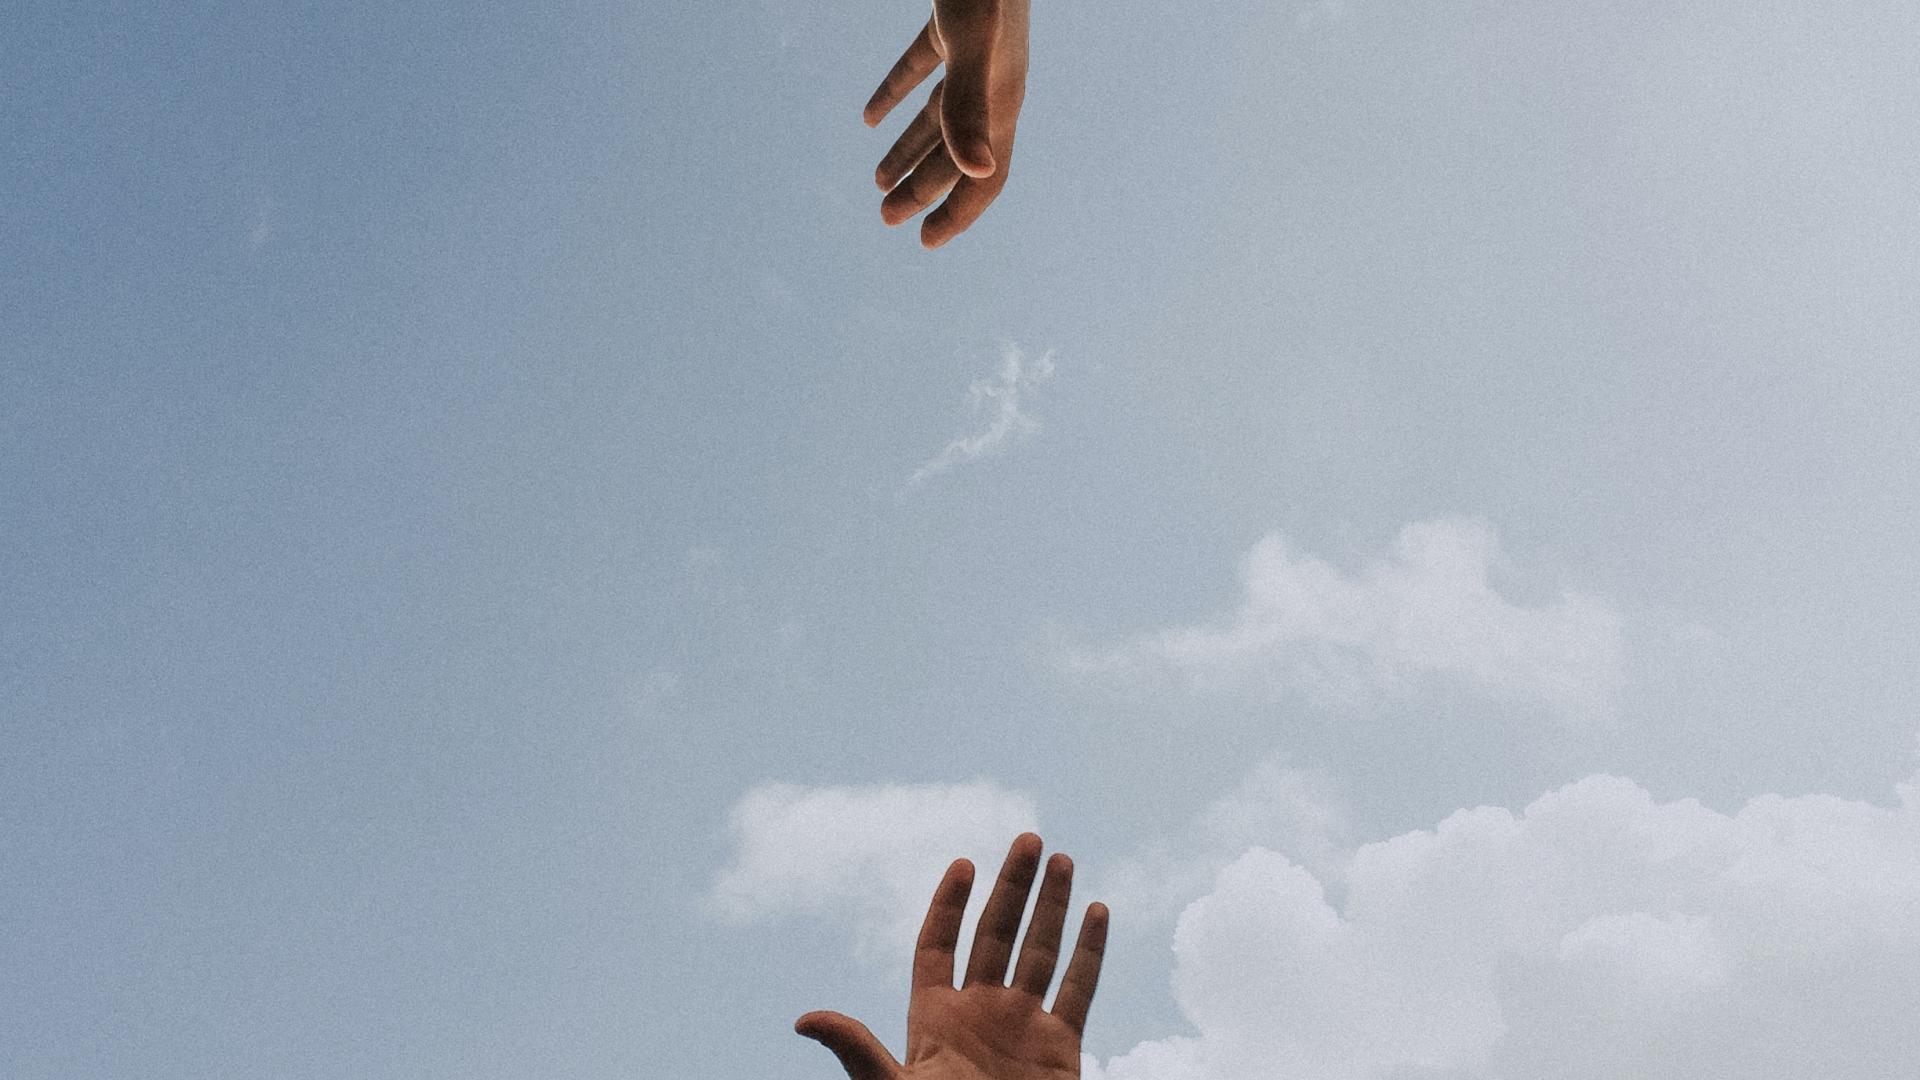 Twee handen die naar elkaar reiken tegen de achtergrond van een blauwe lucht.